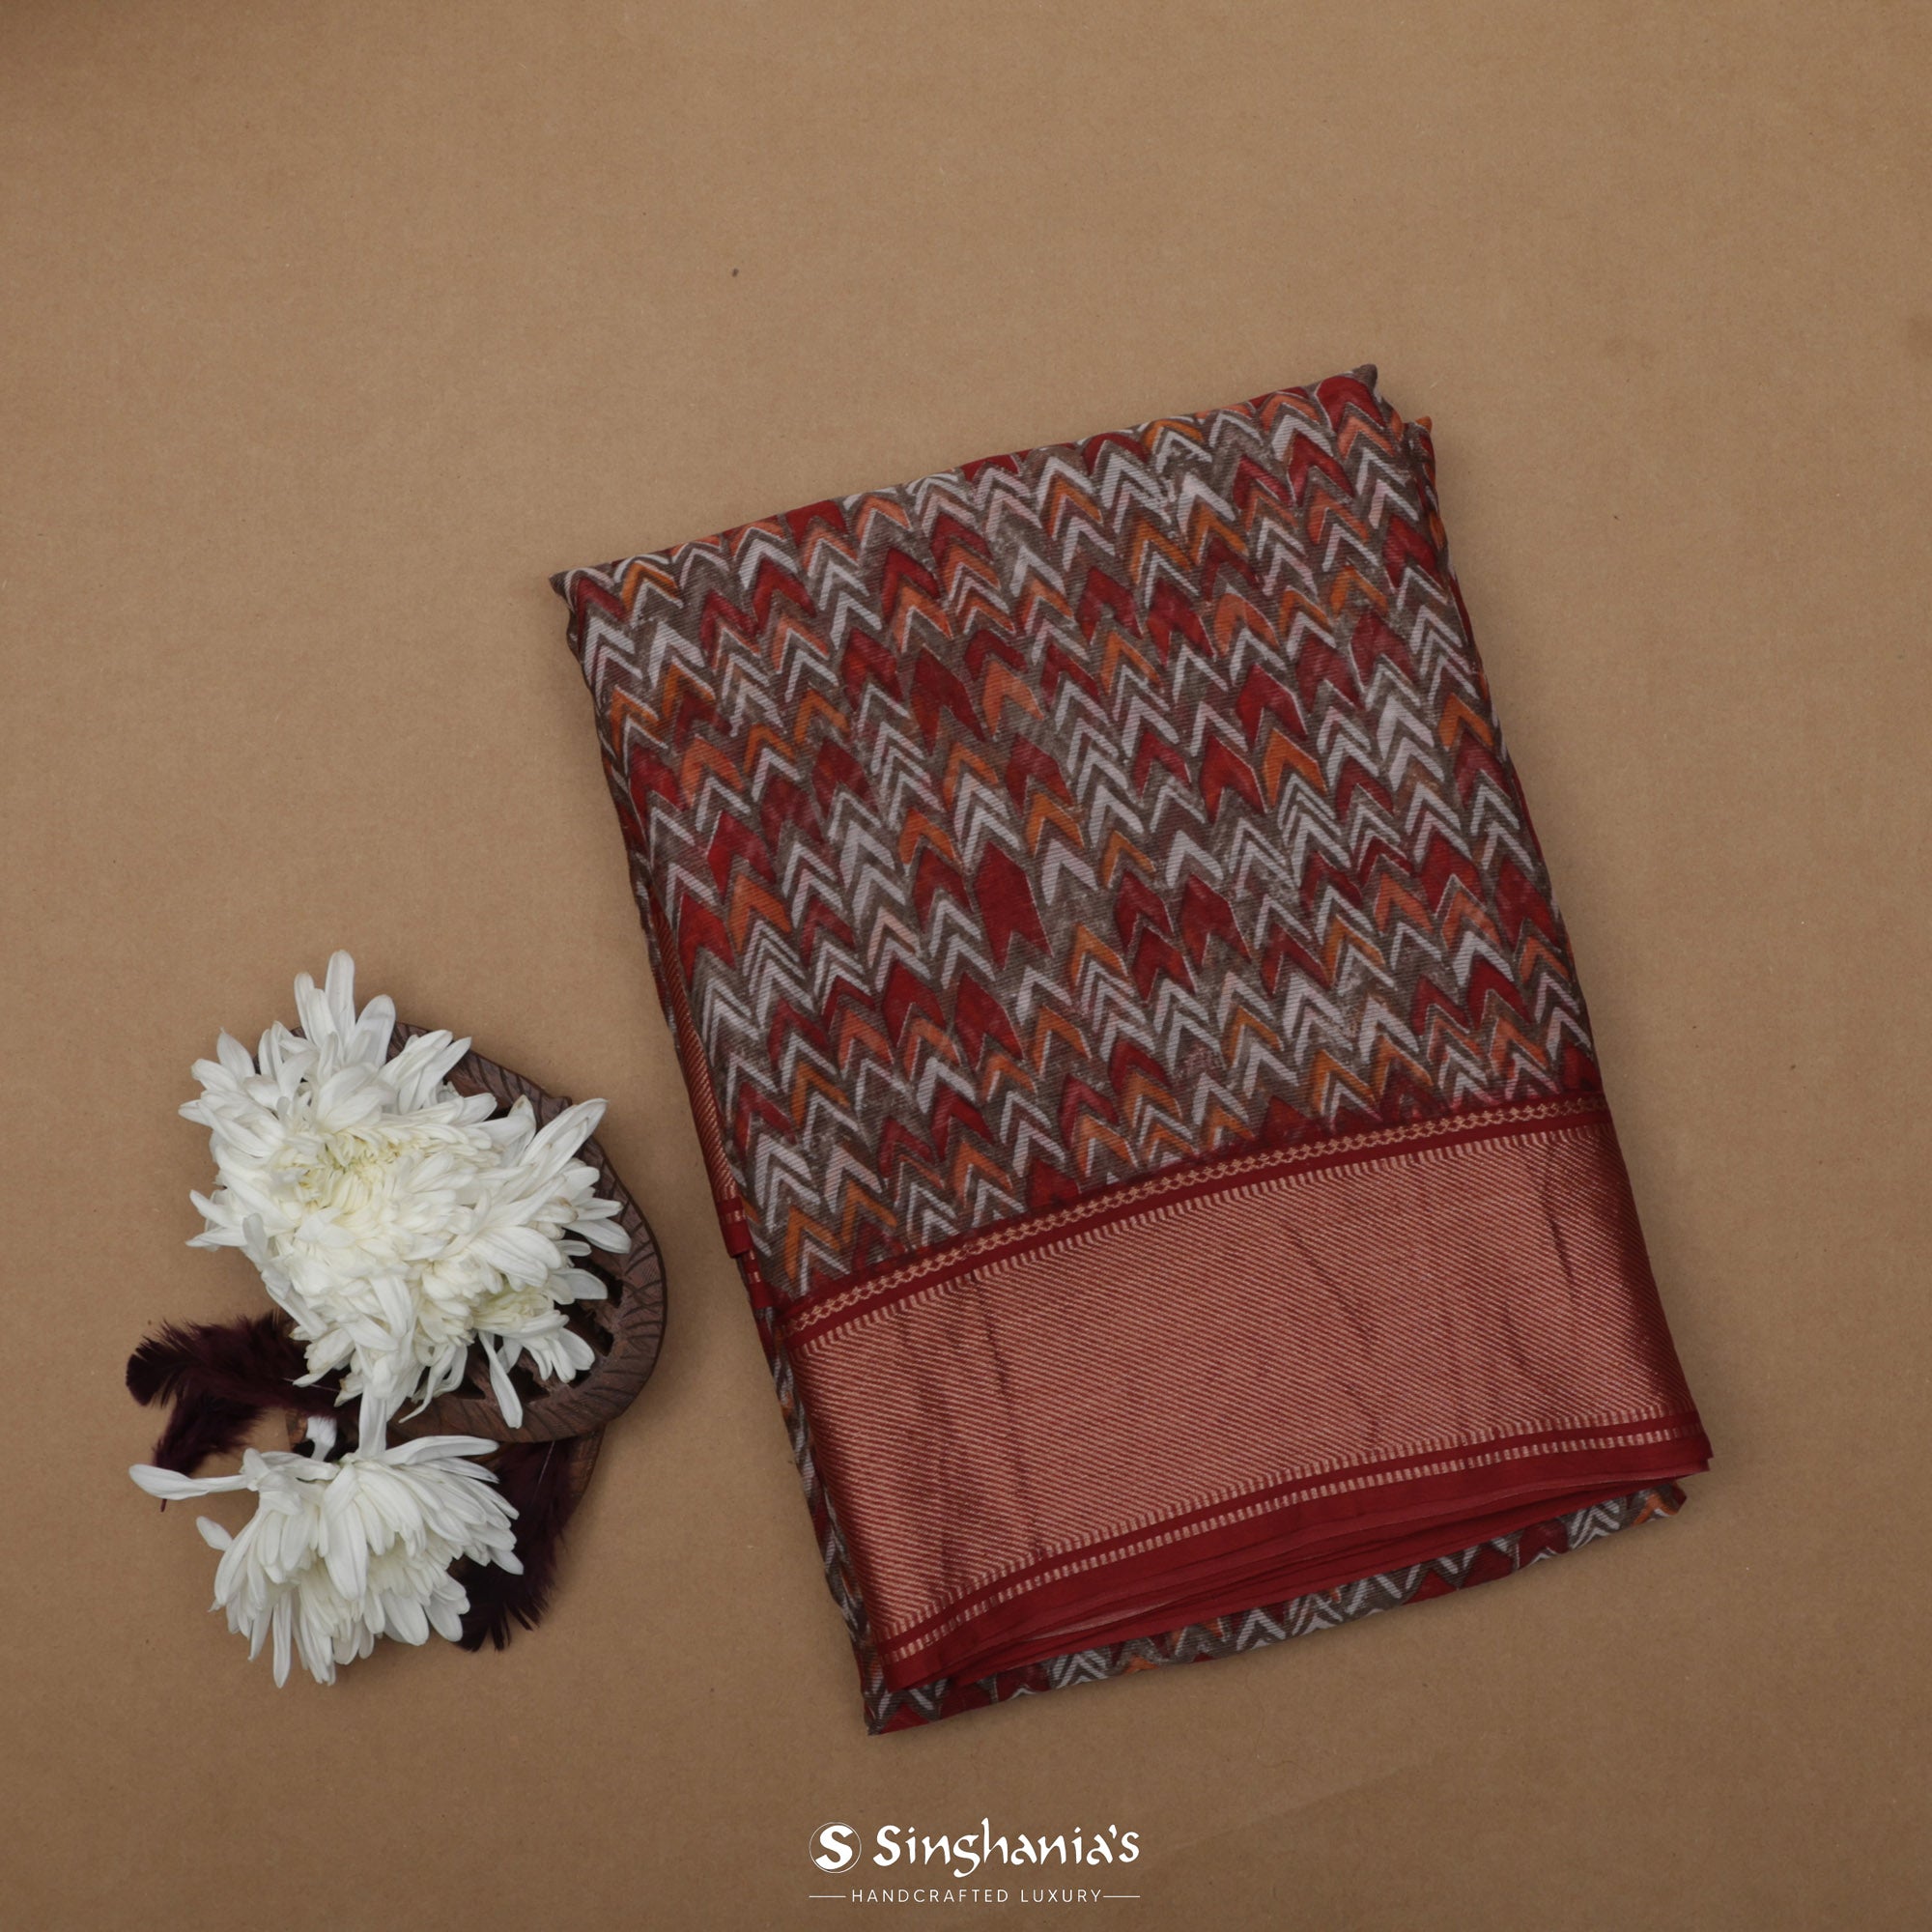 Deep Brown-Red Printed Maheshwari Saree With Geometrical Design